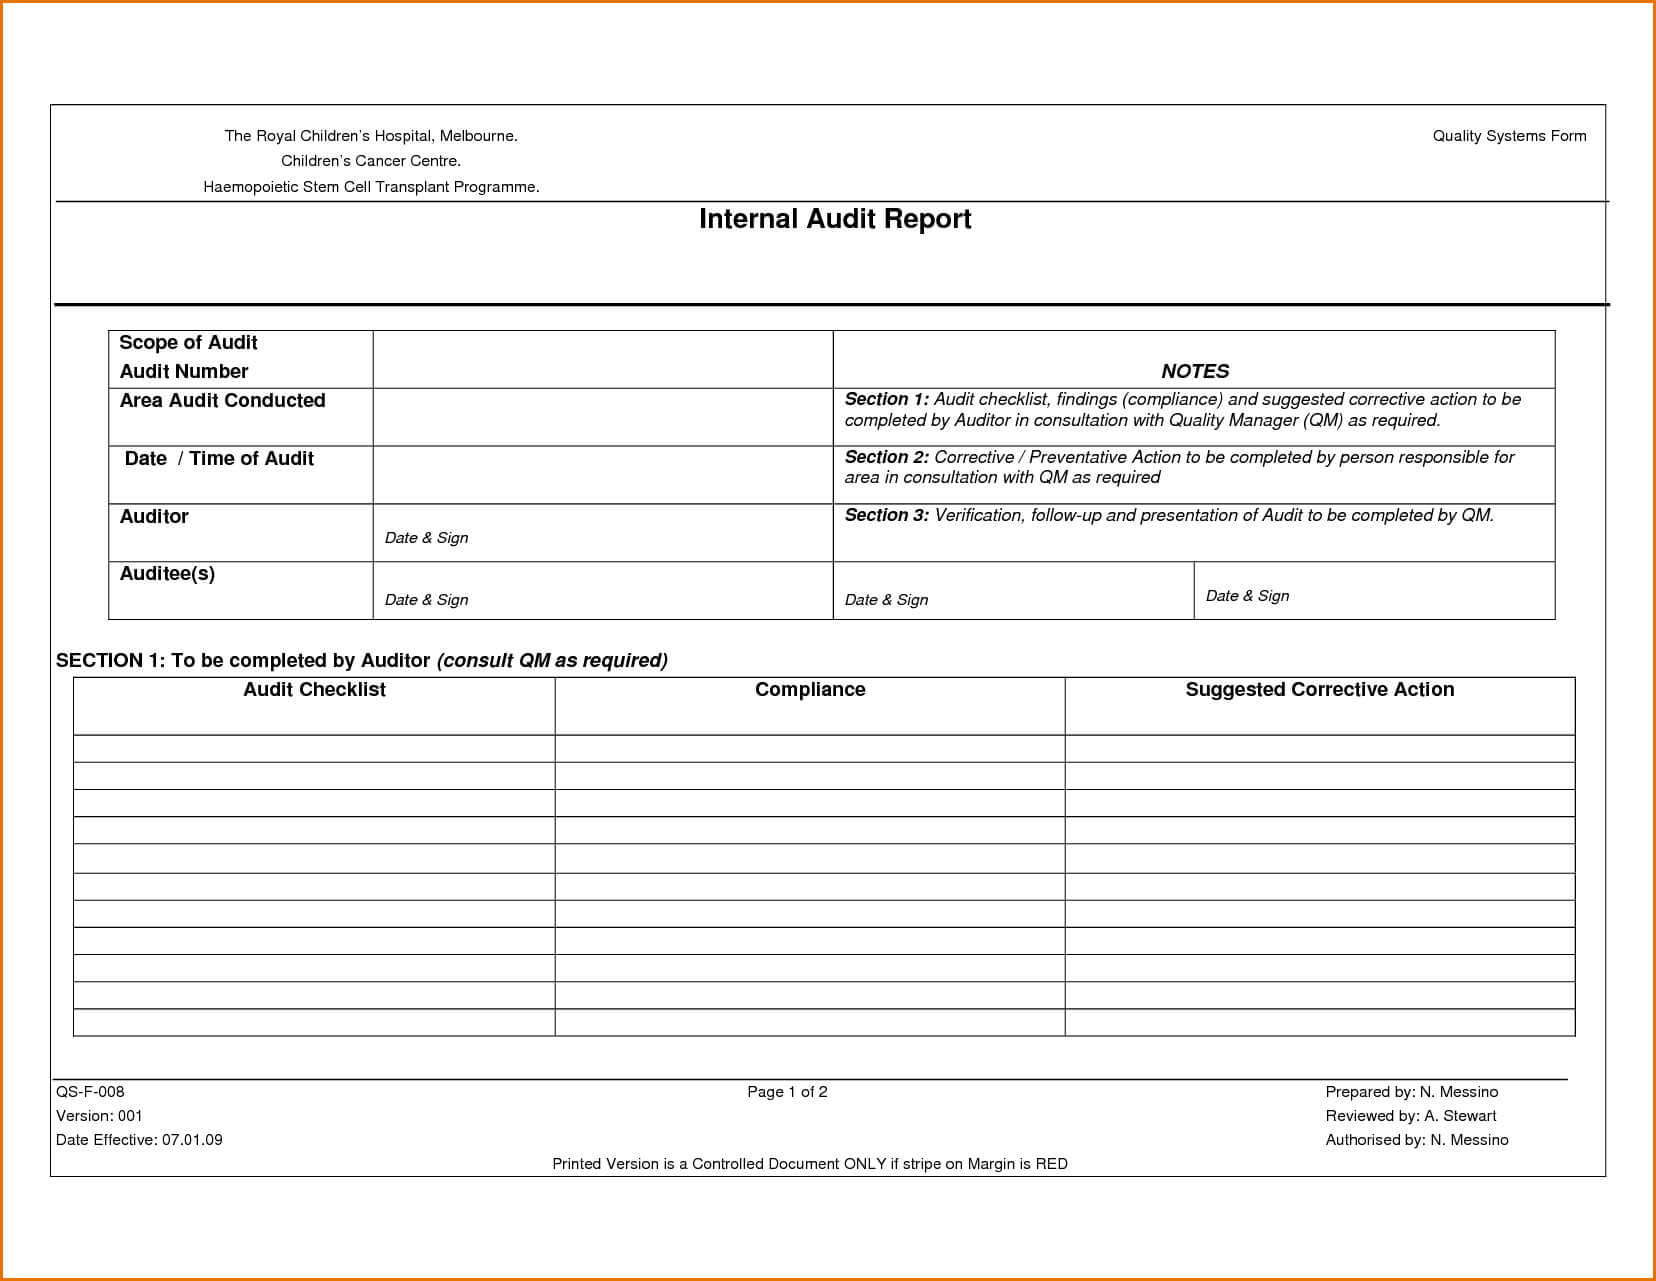 Internal Audit Report Template Word | Internal Audit, Report Within It Audit Report Template Word